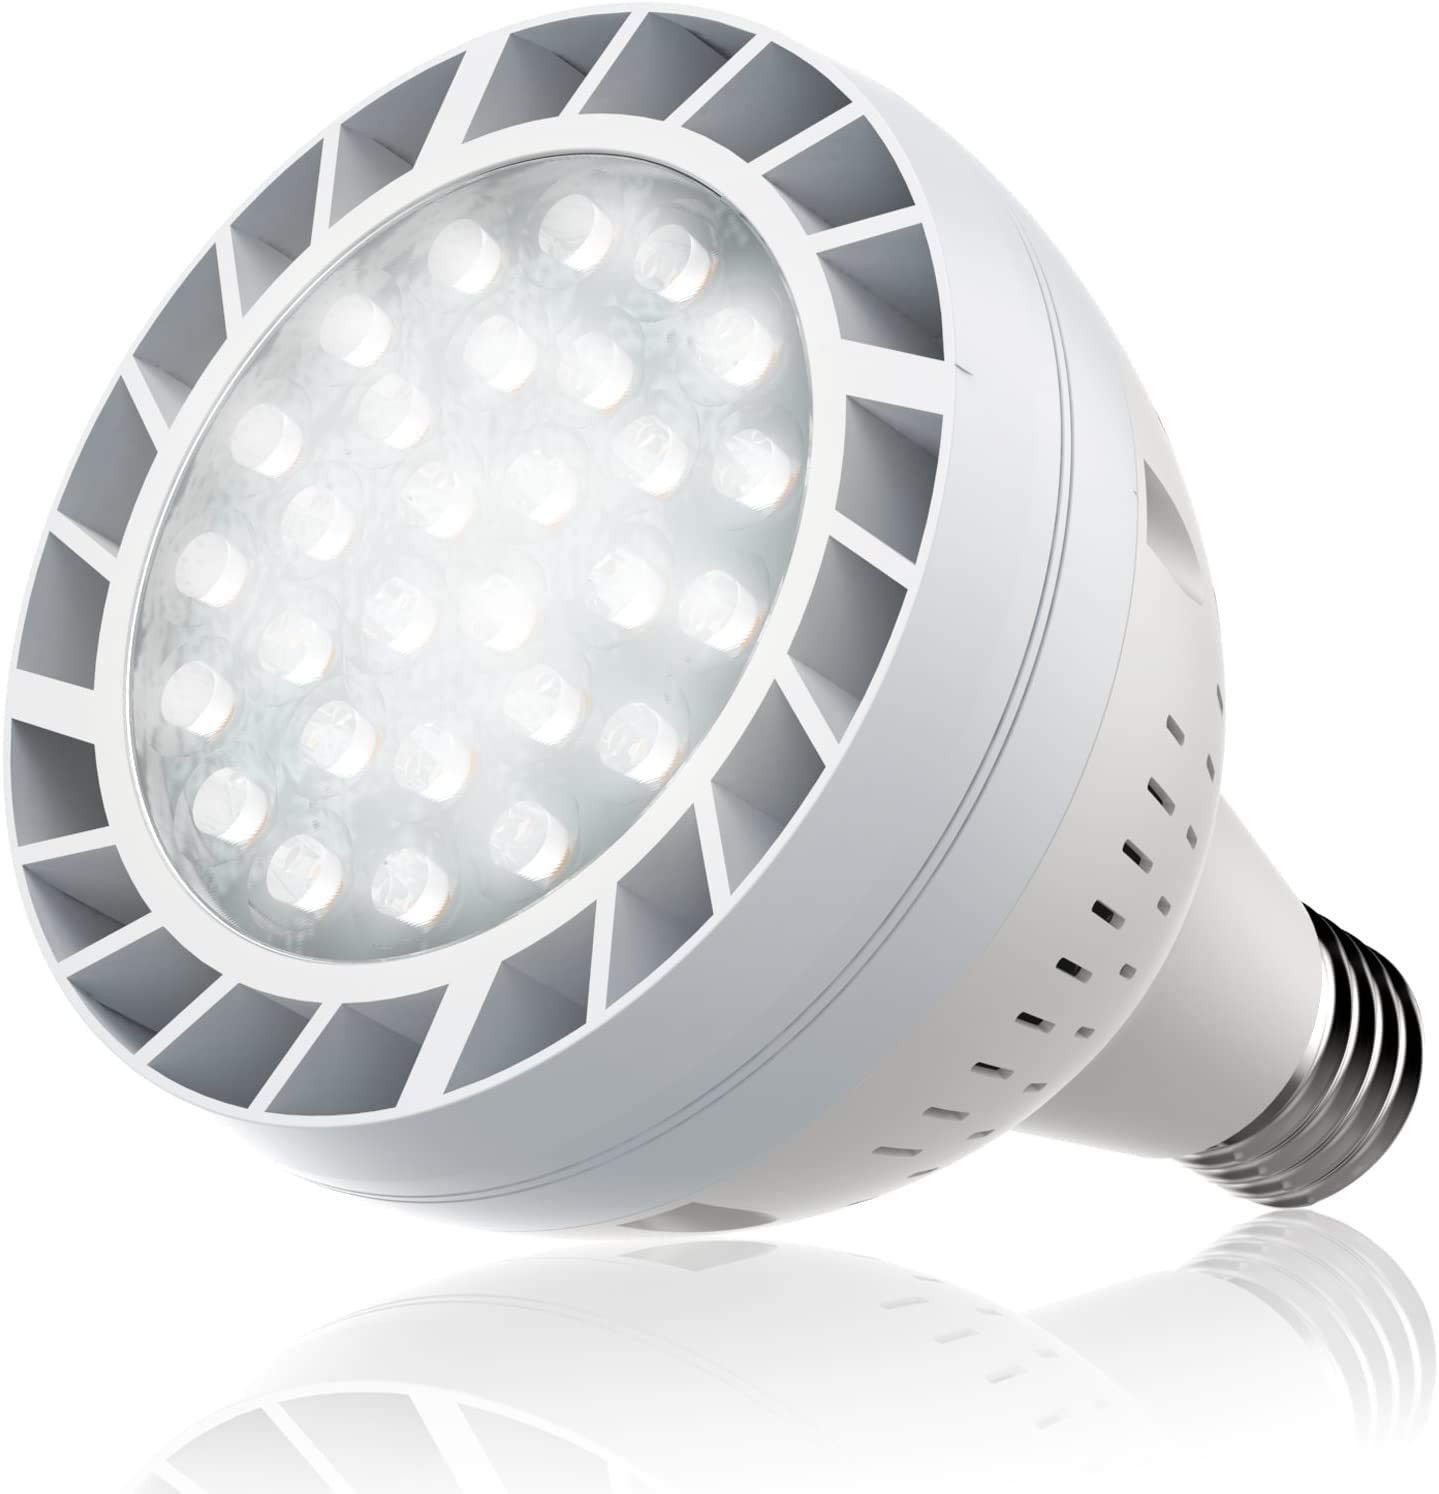 Bonbo LED Pool Bulb White Light 120V 65W 6500K Daylight White E26